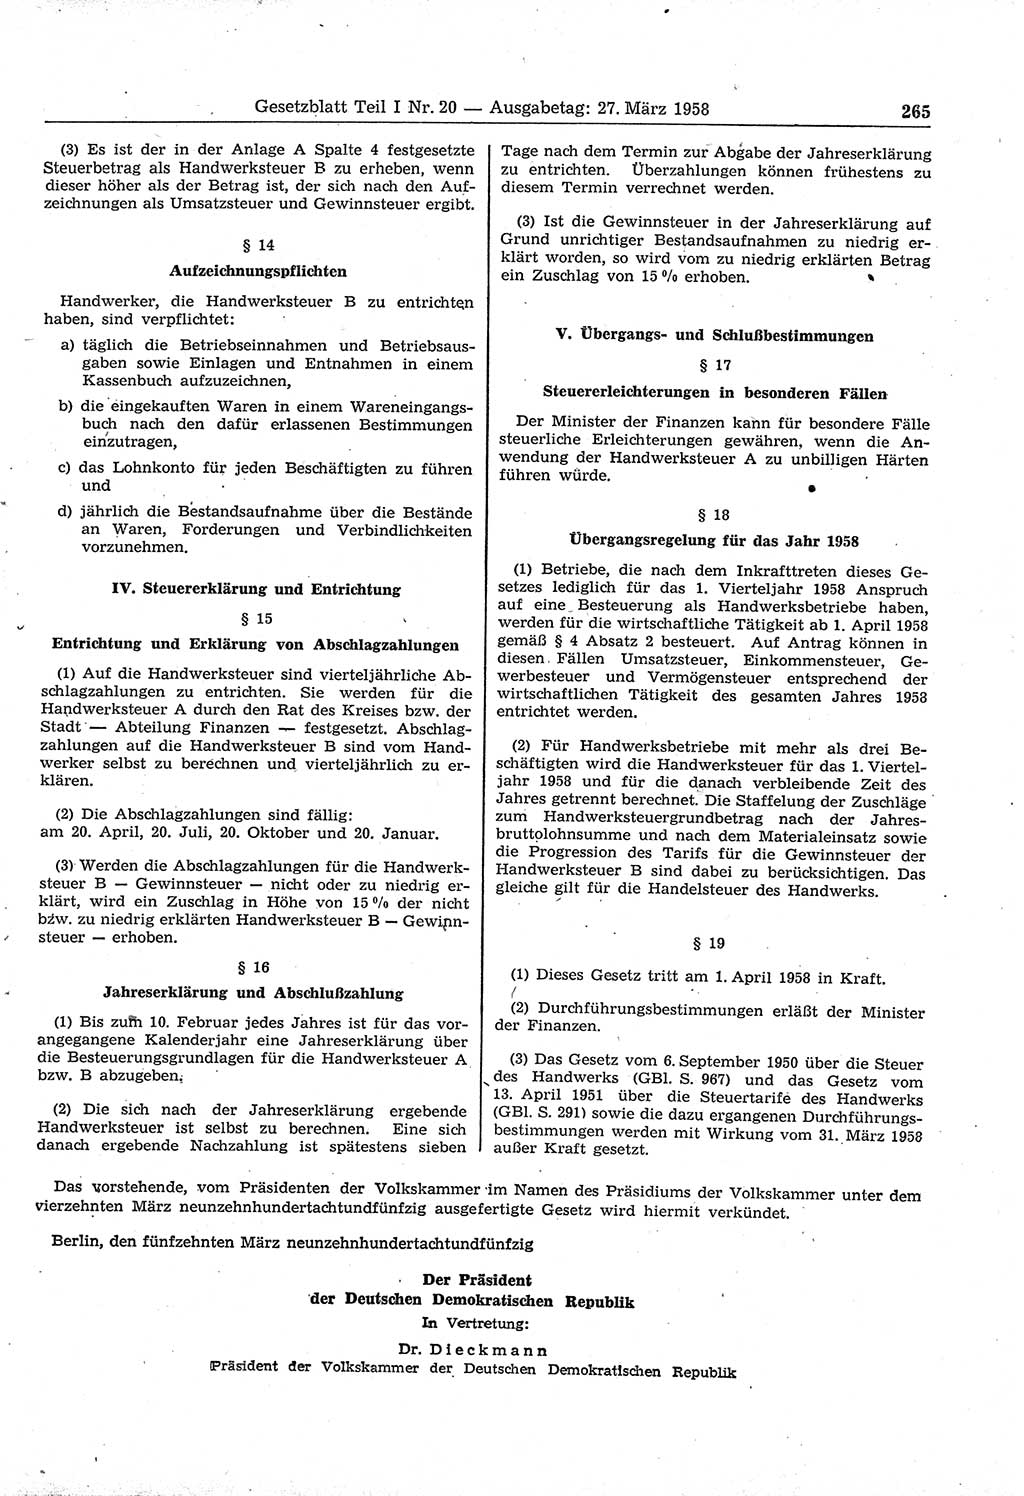 Gesetzblatt (GBl.) der Deutschen Demokratischen Republik (DDR) Teil Ⅰ 1958, Seite 265 (GBl. DDR Ⅰ 1958, S. 265)